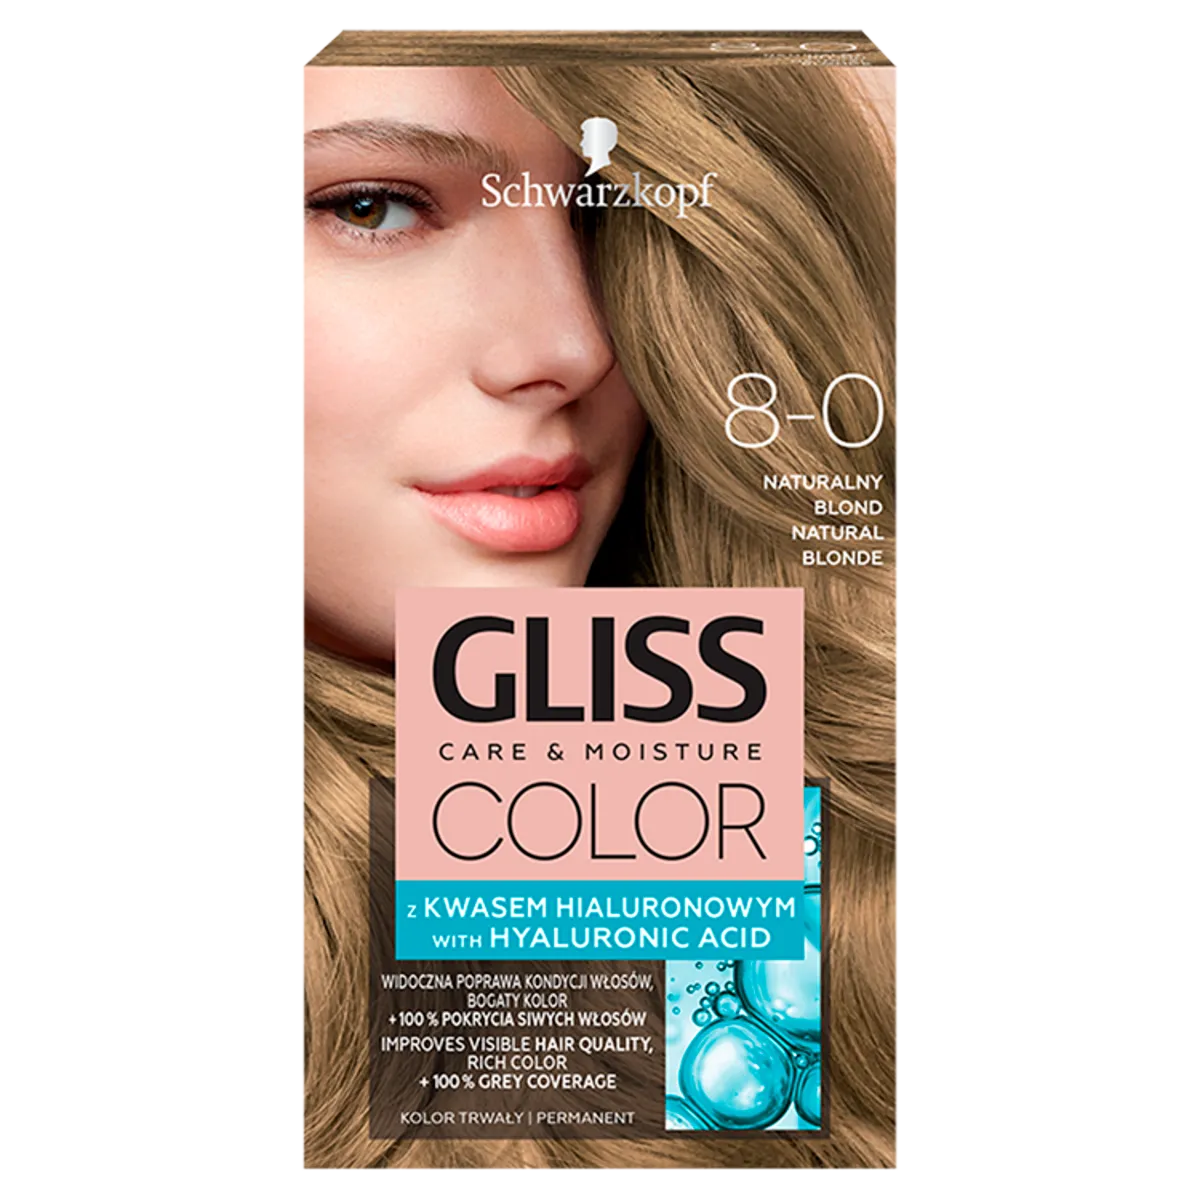 Schwarzkopf Gliss Color Farba do włosów do włosów nr 8-0 Naturalny blond, 1 szt.